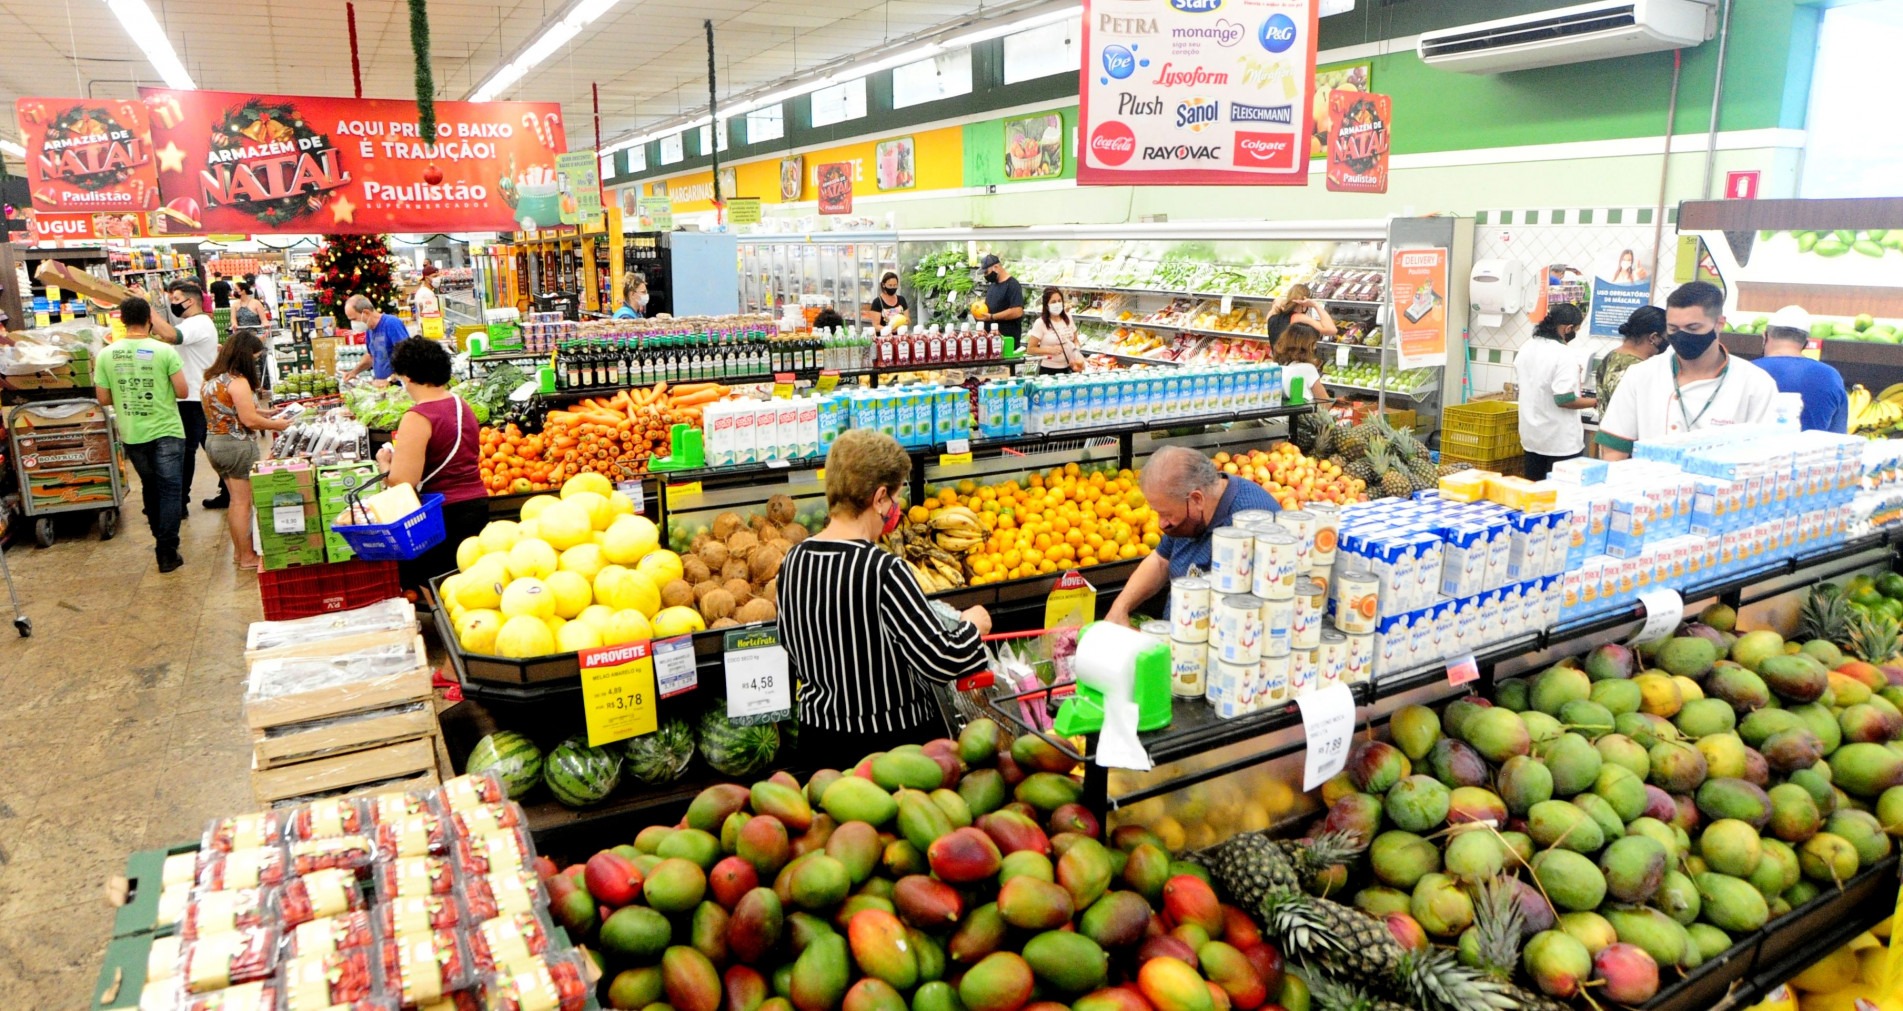 Setores de frutas e açougues eram os mais movimentados ontem nos supermercados da cidade